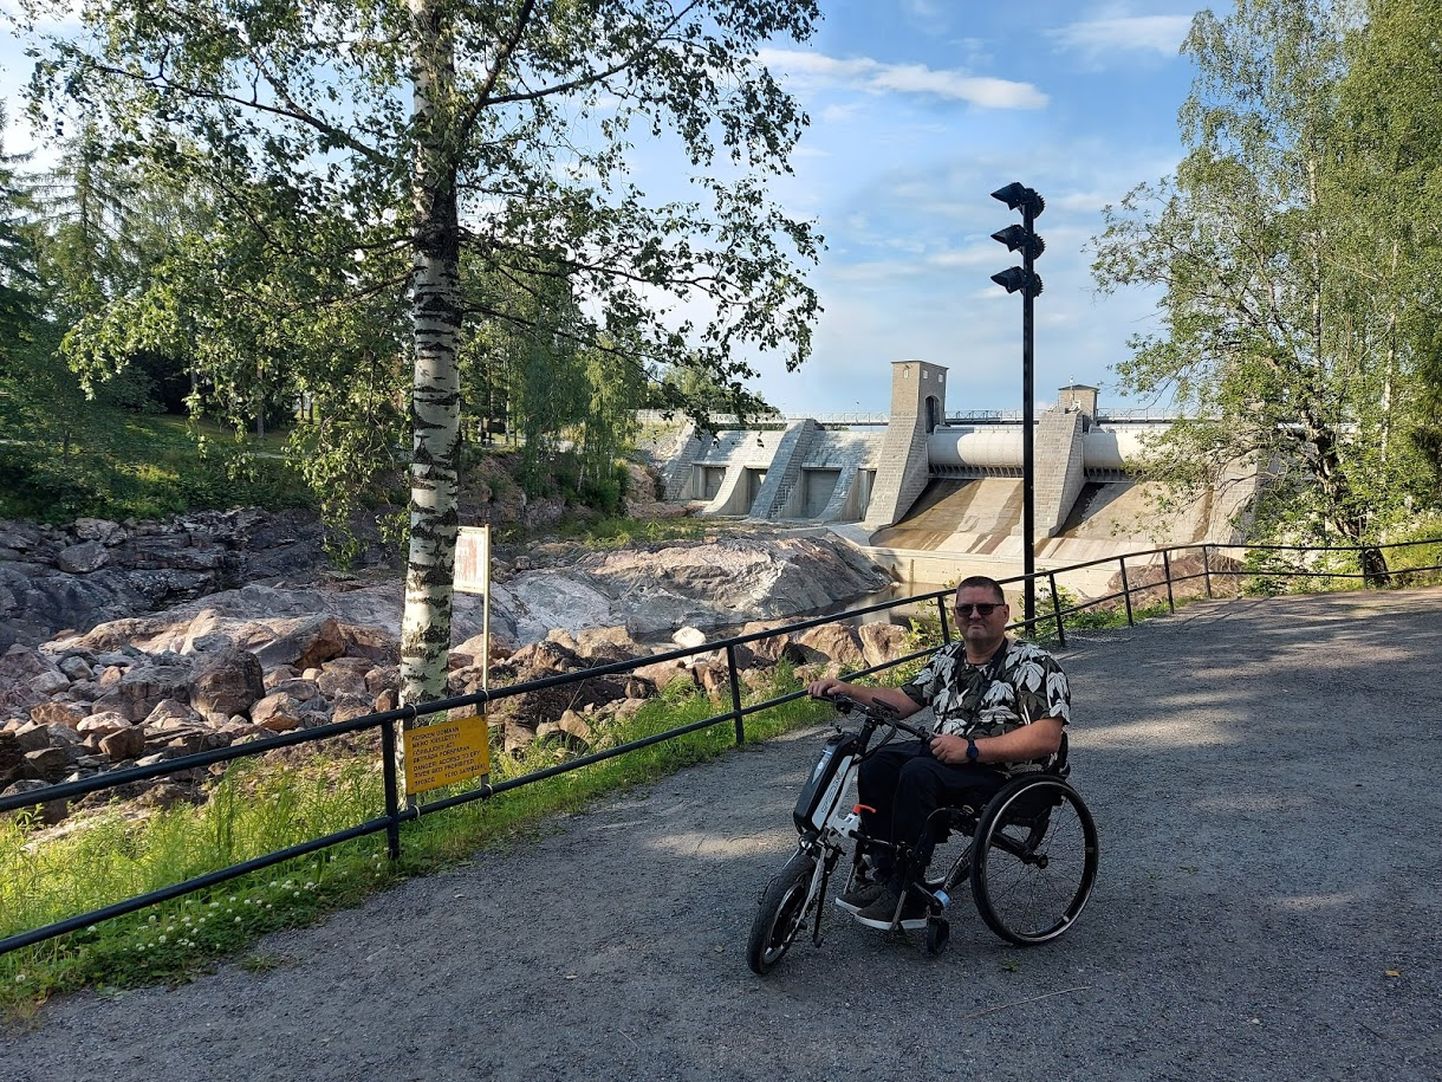 Liikumispuudega inimeste eestkõneleja Arko Vool on kogenud matkaja. Looduse imetlemine on alati reisi oluline osa. Ilmateade on ratastooli kasutavale matkajale oluline info; kõige parem on kuiv ja soe ilm. Pildil Arko Imatra kose juures Soomes, Lõuna-Karjalas.